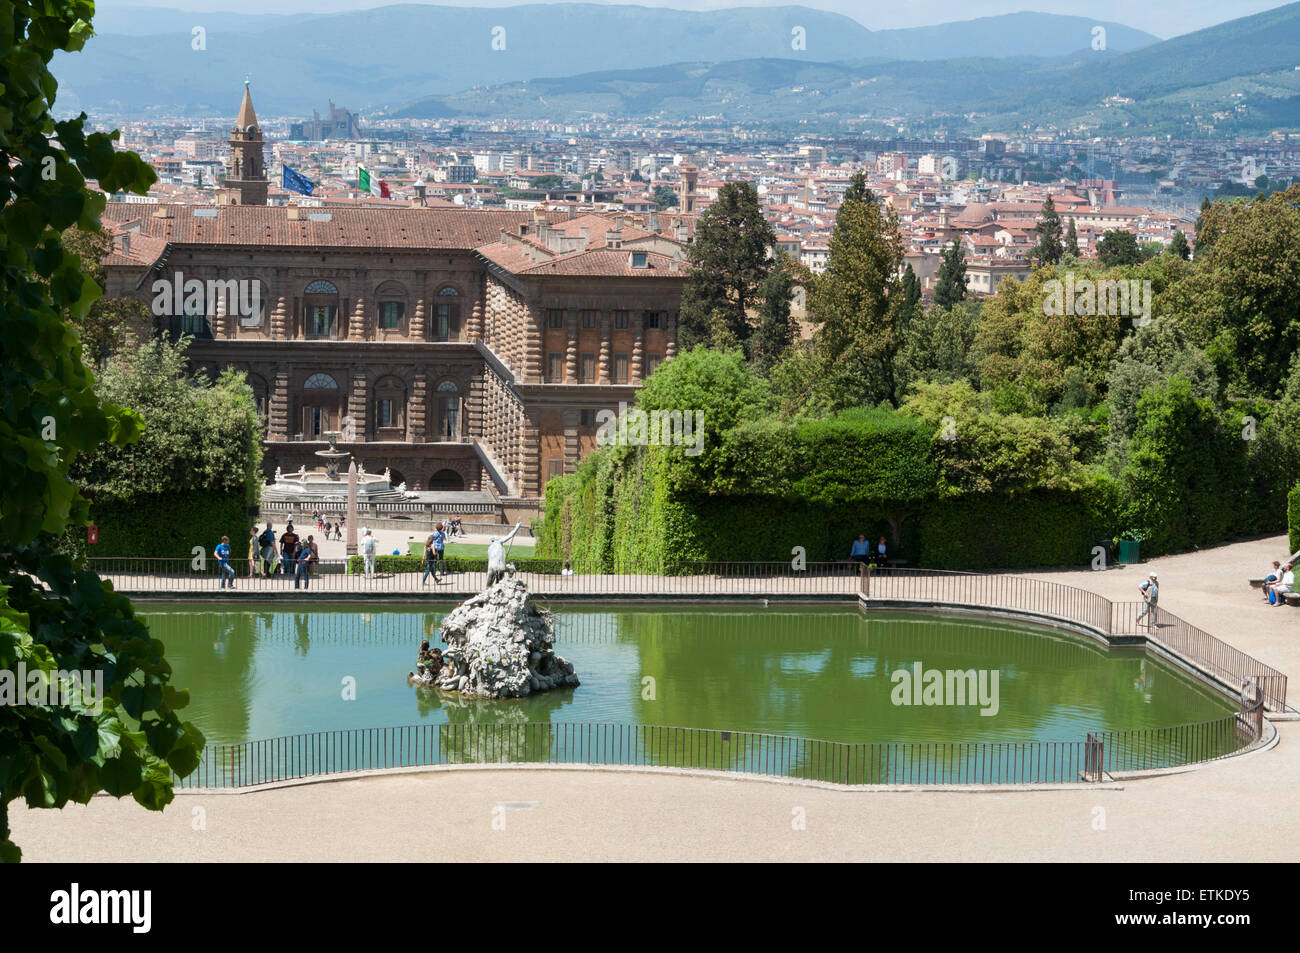 Palazzo Pitti e Firenze vista dal giardino di Boboli, Firenze, Italia Foto  stock - Alamy